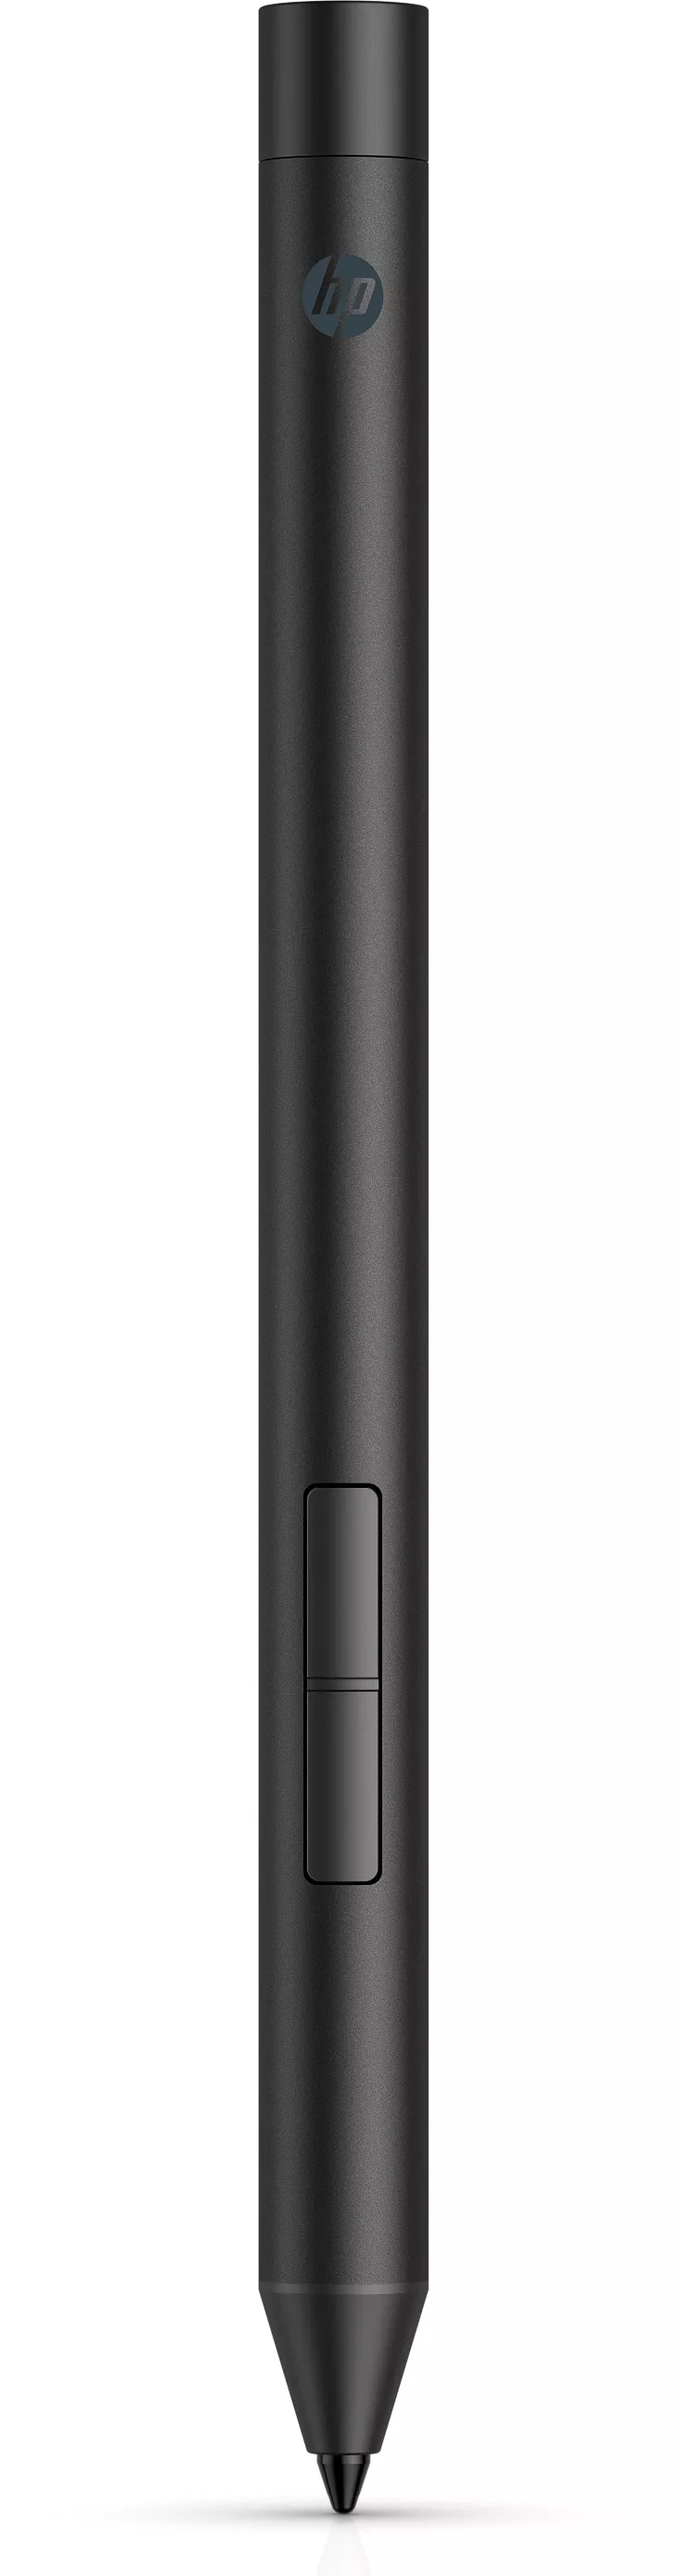 Revendeur officiel HP Pro Pen